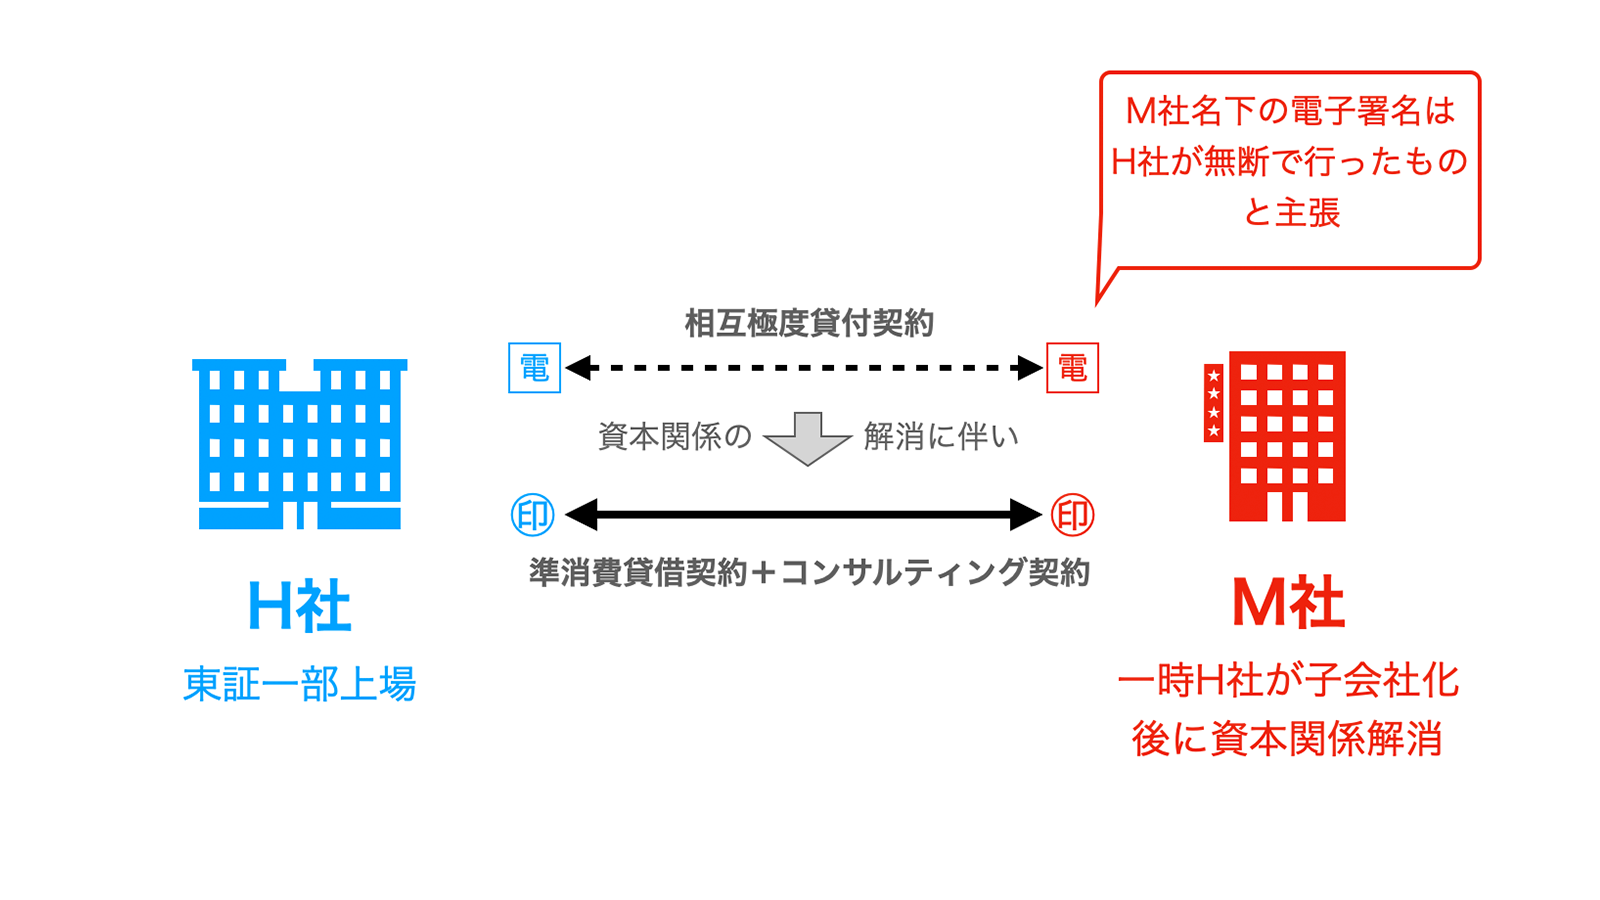 東京地裁令和1年7月10日貸金返還等請求事件では、電子署名の真正性が争われた